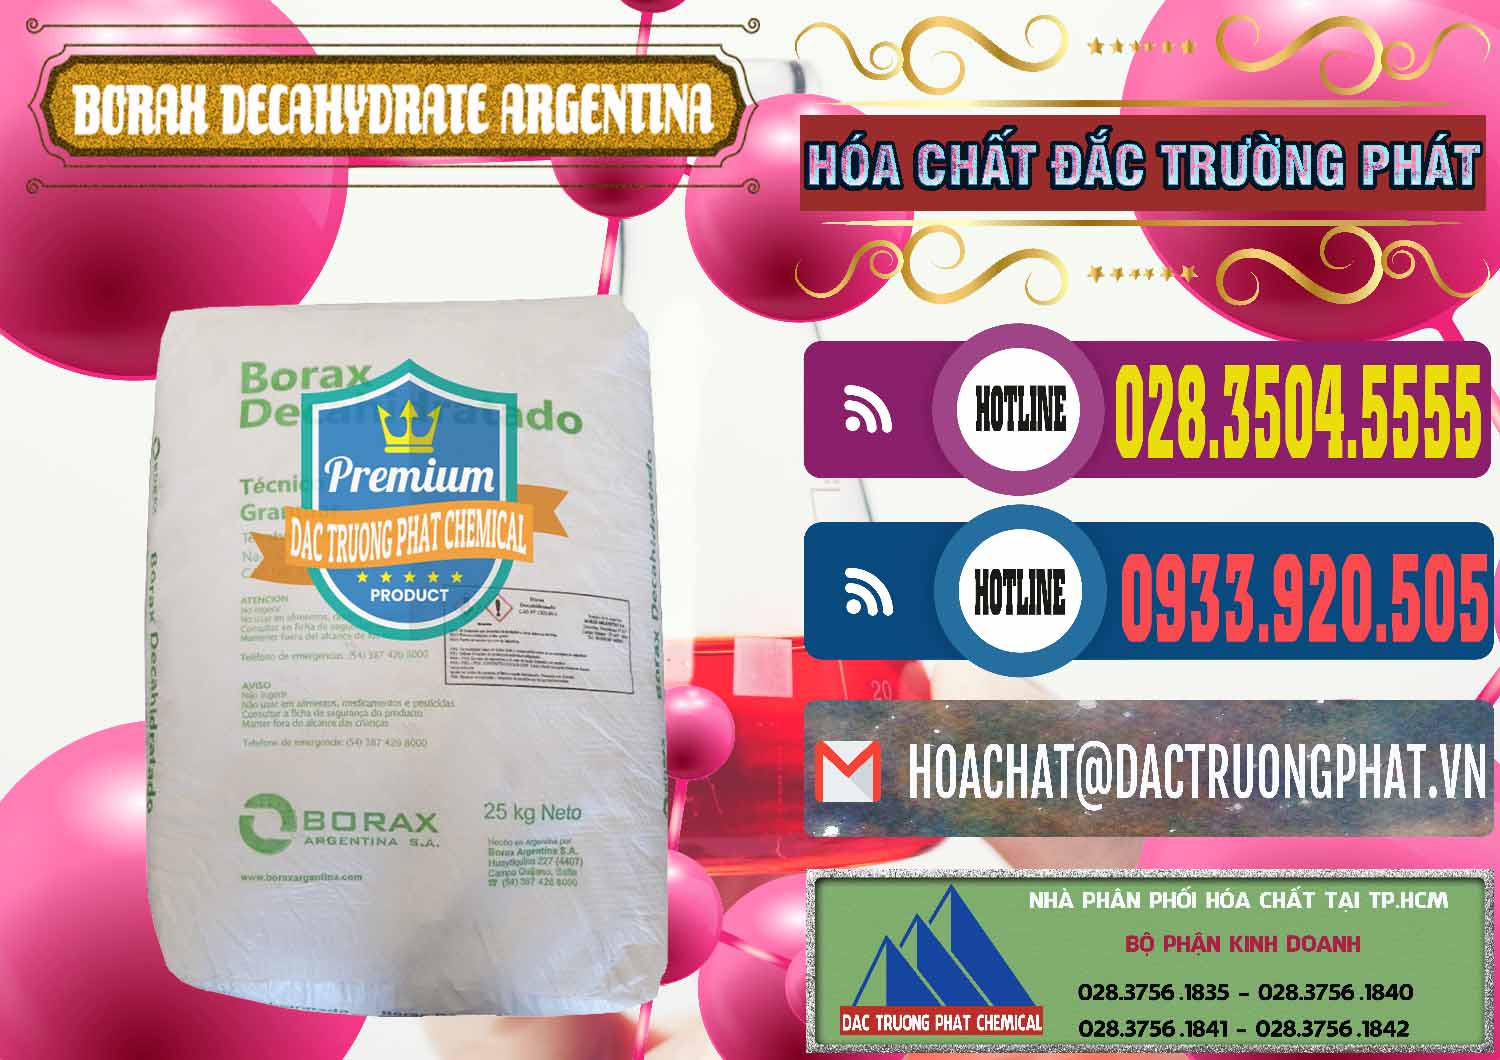 Cty chuyên kinh doanh & bán Borax Decahydrate Argentina - 0446 - Cty chuyên phân phối _ nhập khẩu hóa chất tại TP.HCM - muabanhoachat.com.vn